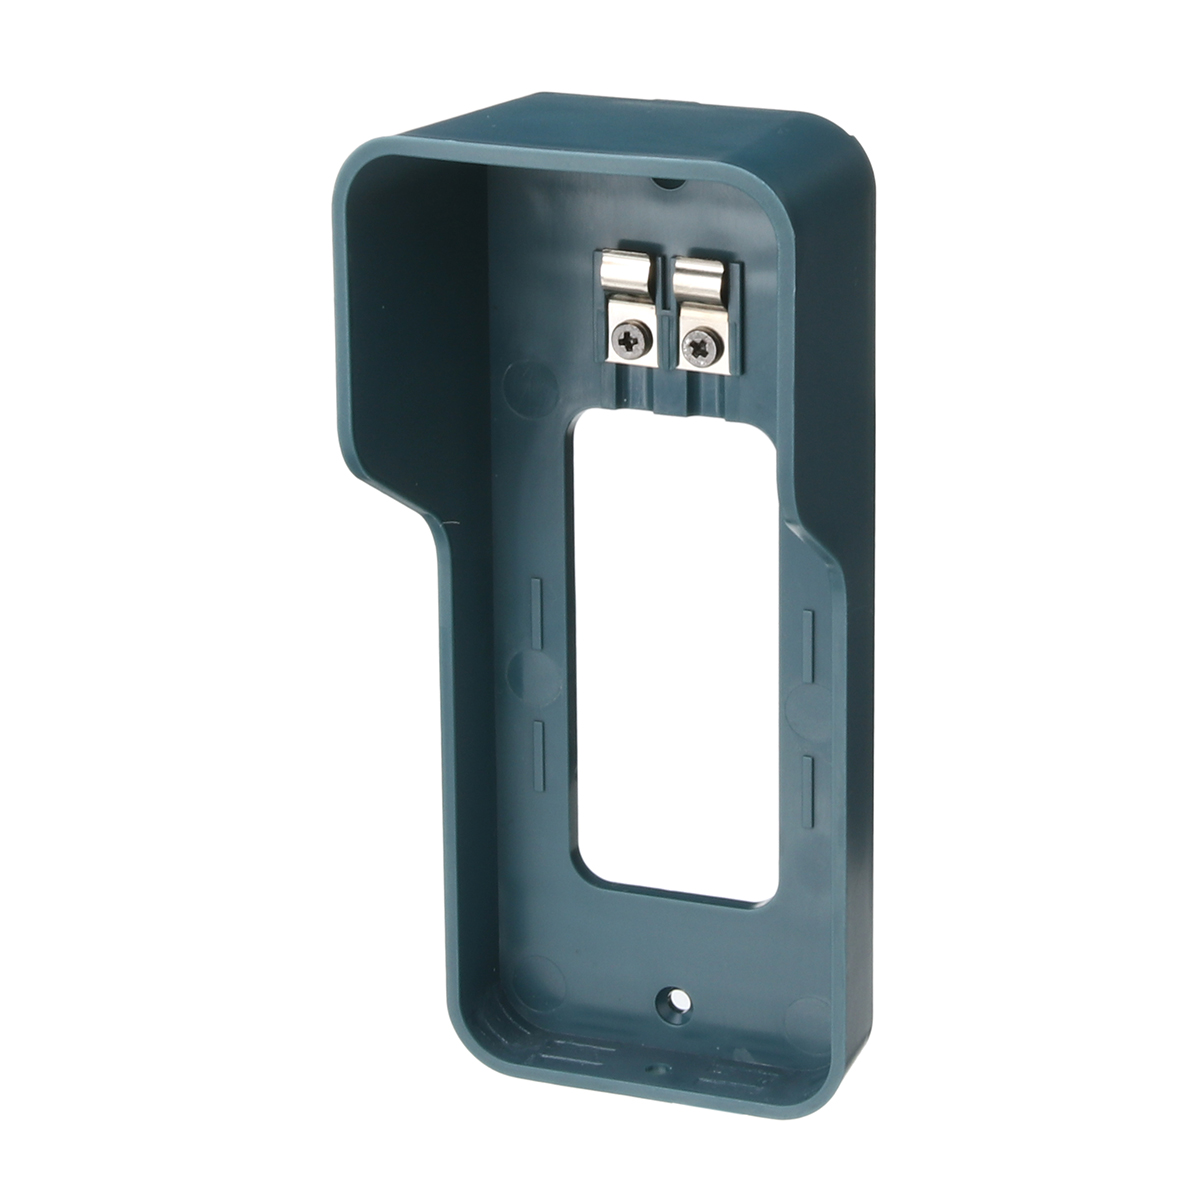 Wireless-Doorbell-Bracket-Rotatable-20-40-deg-Adjustable-Waterproof-Cover-for-Wireless-Doorbell-1974892-2